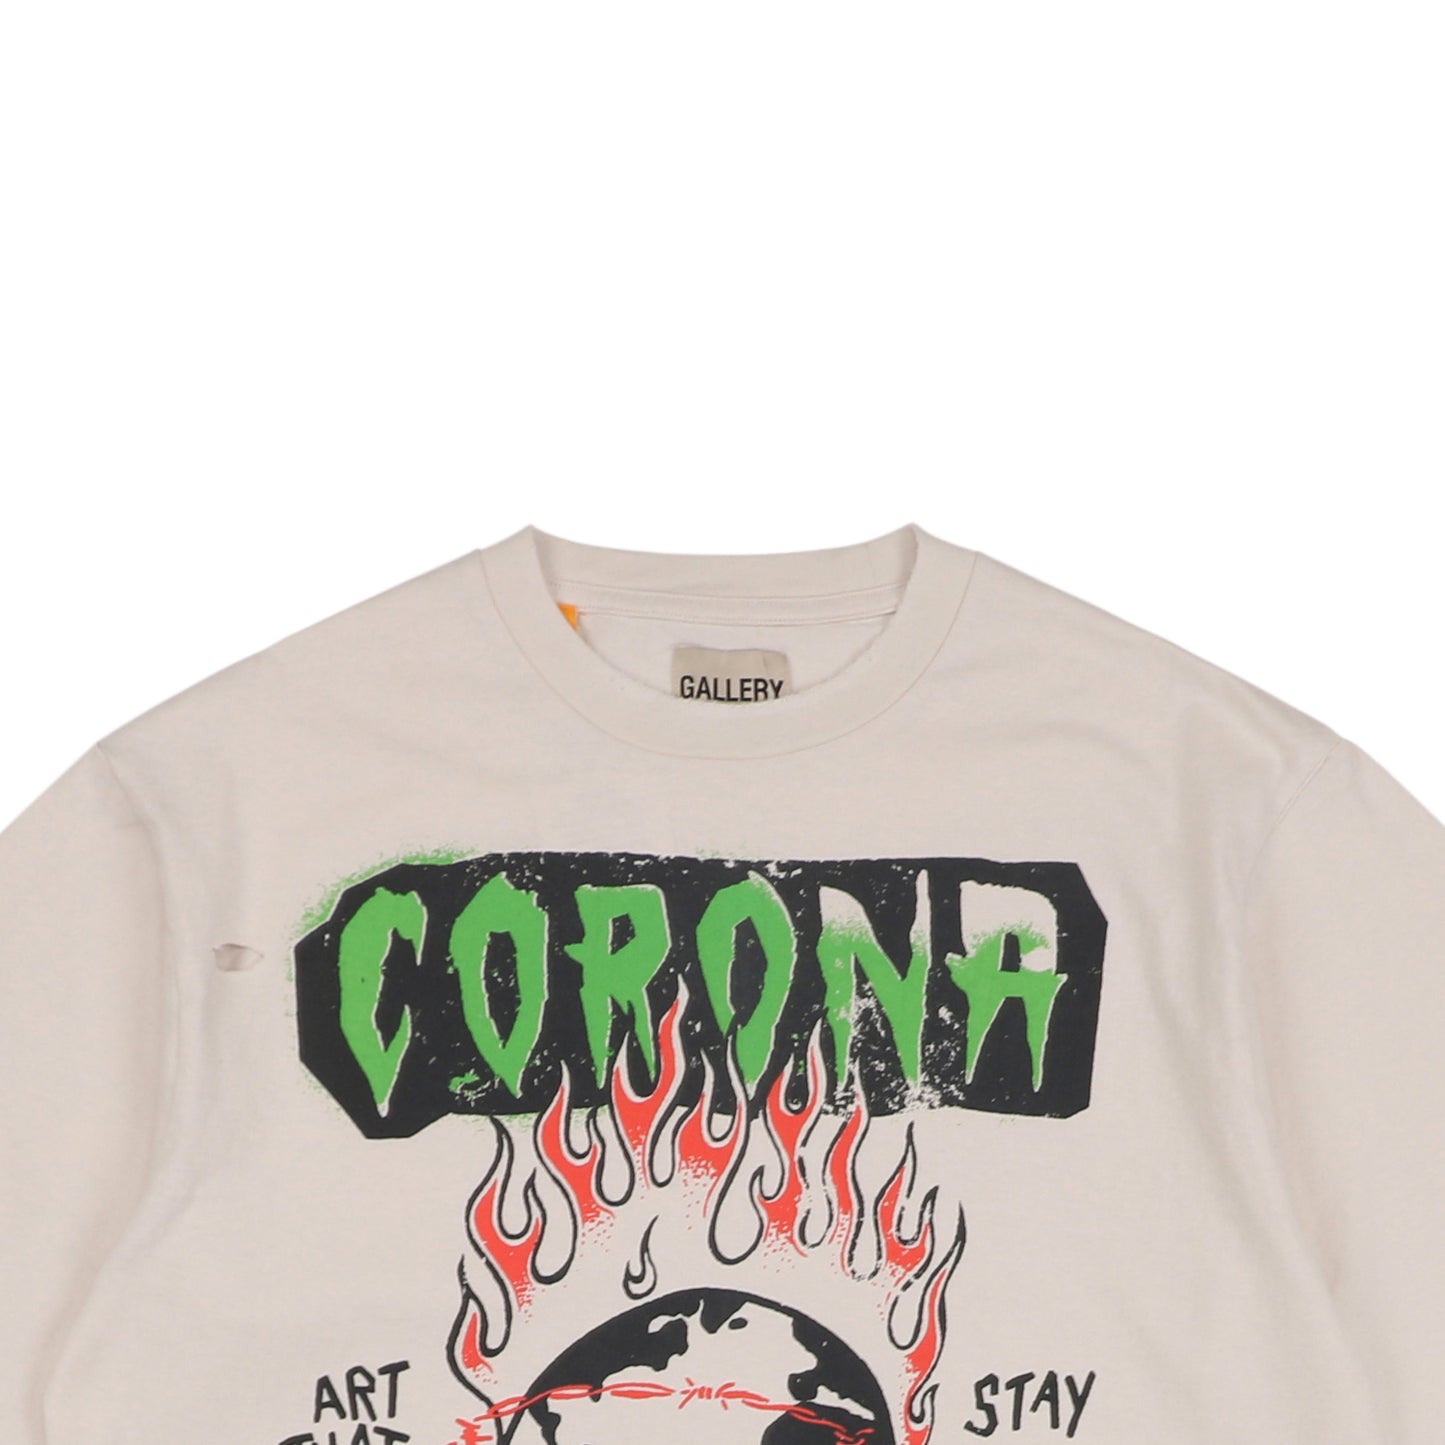 Gallery Dept Corona Virus Beige T-Shirt